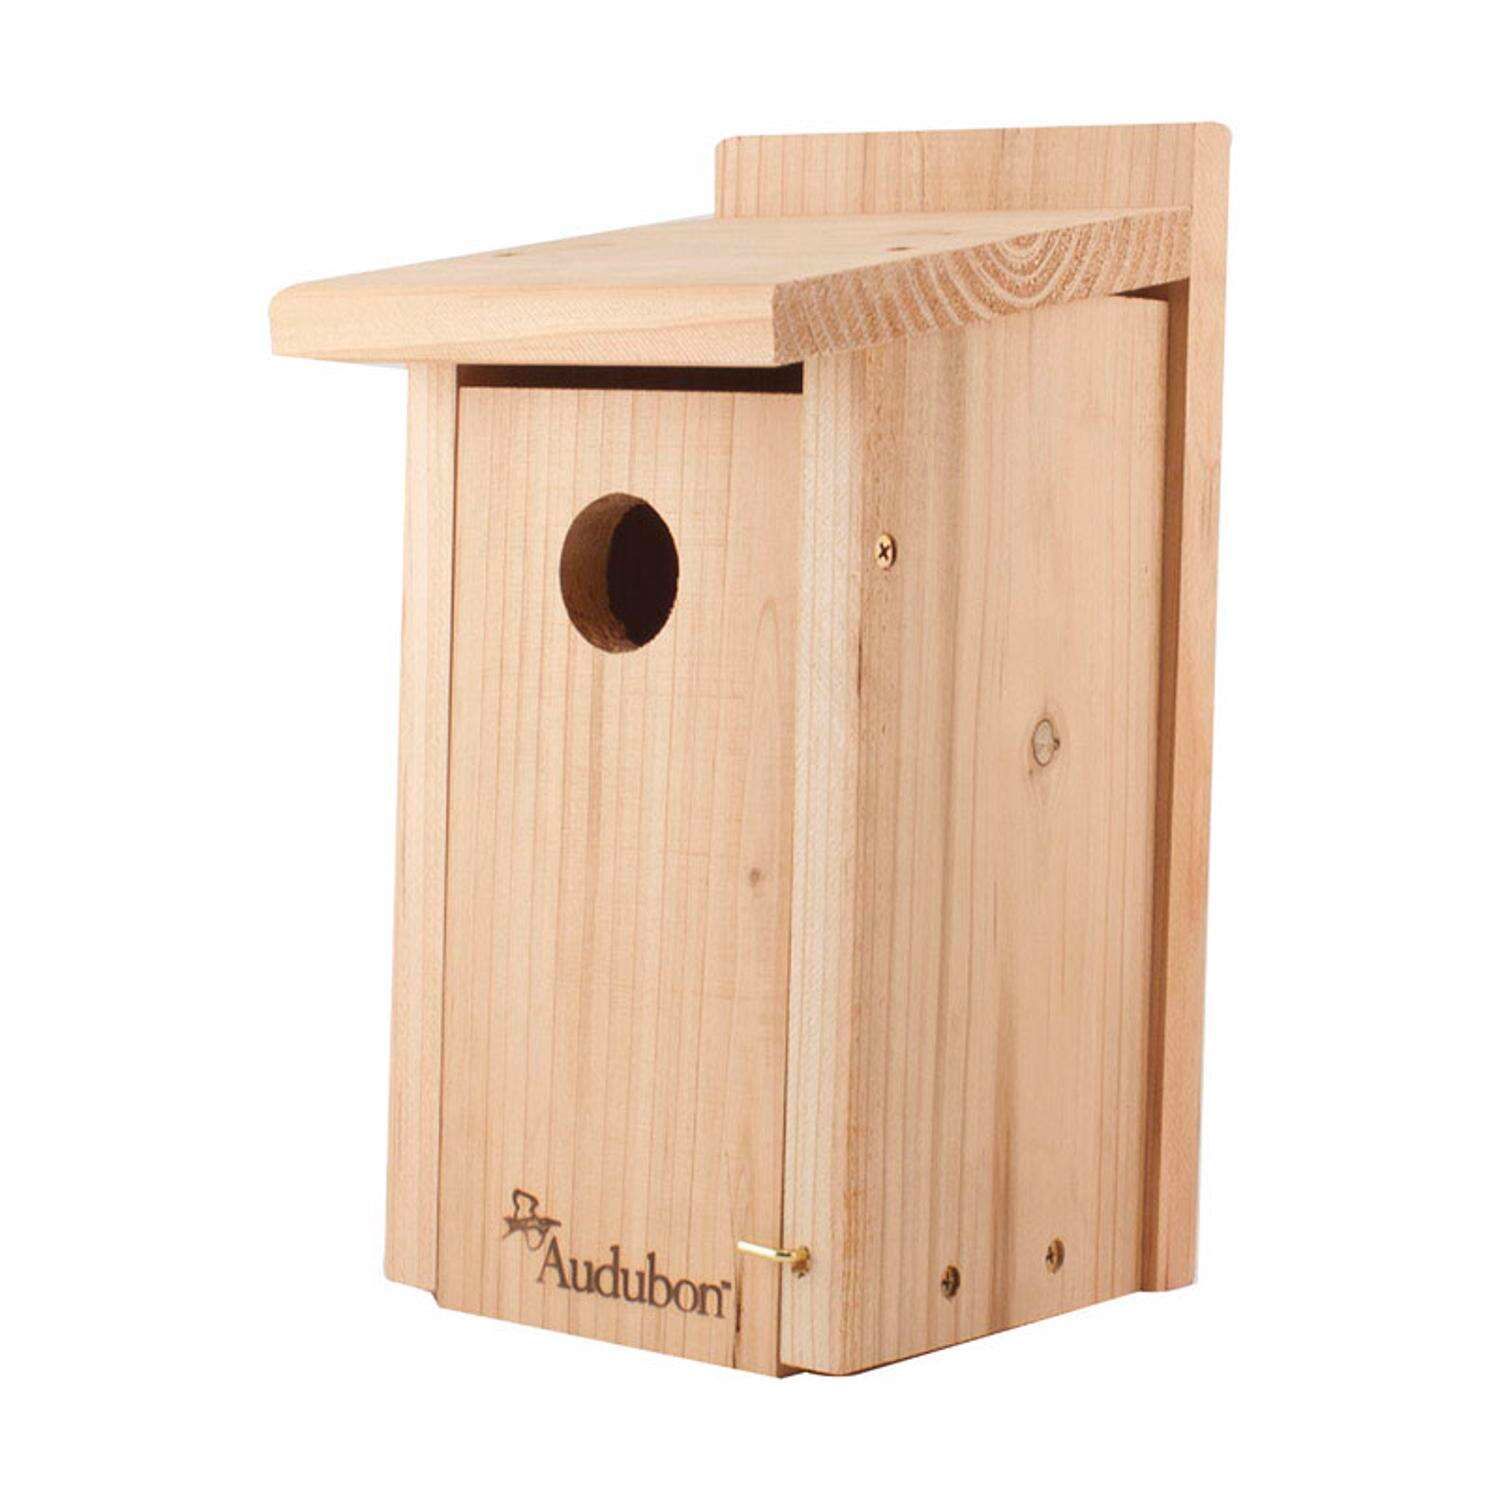 The Best Outdoor Accessories for Bird Lovers Option: Audubon Red Cedar Bird House